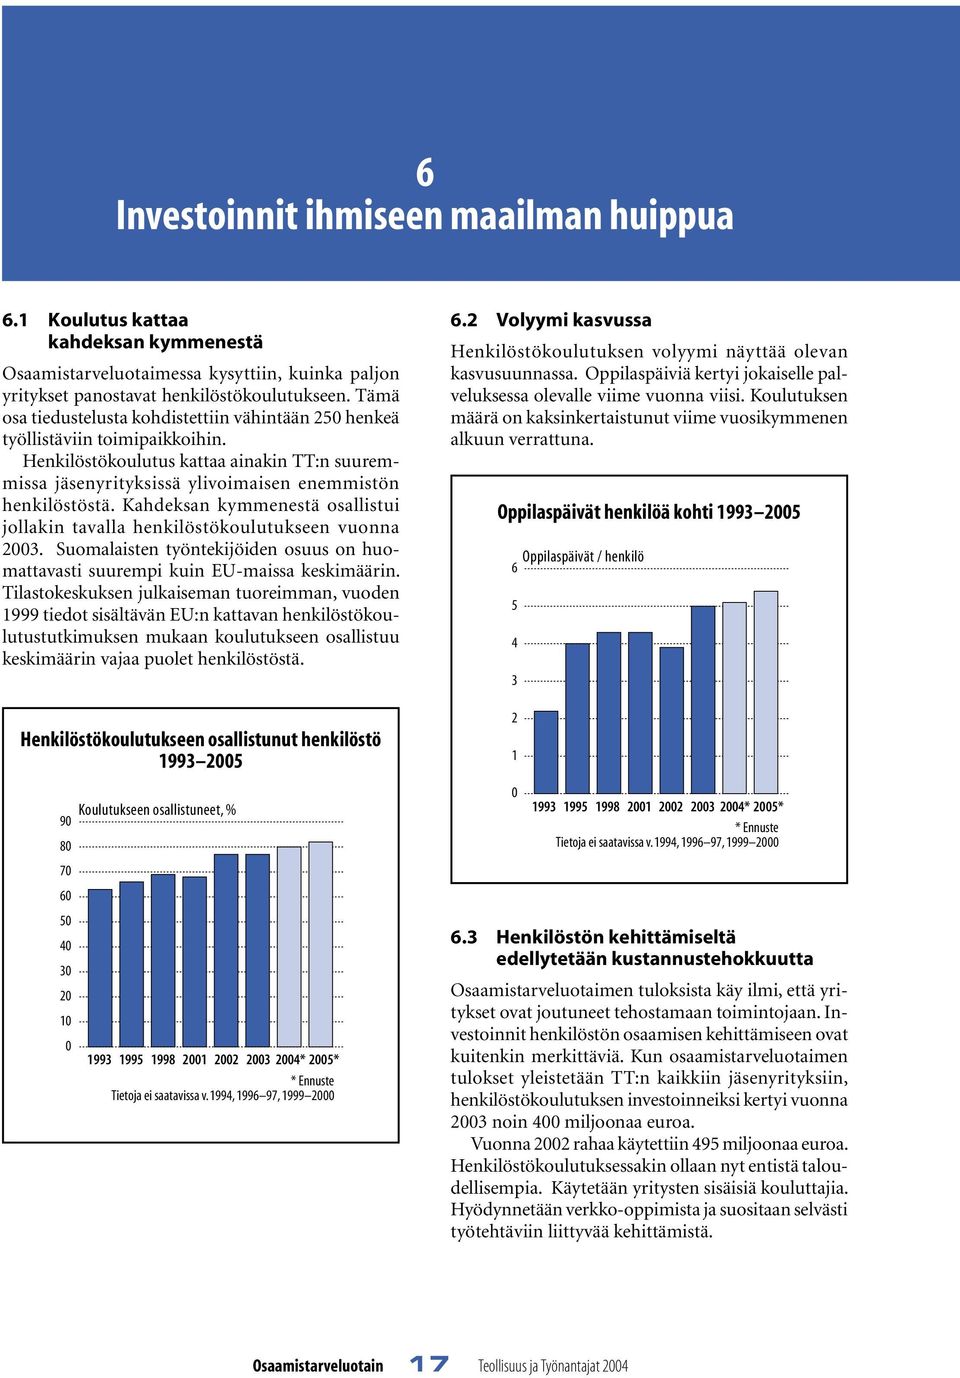 Kahdeksan kymmenestä osallistui jollakin tavalla henkilöstökoulutukseen vuonna 23. Suomalaisten työntekijöiden osuus on huomattavasti suurempi kuin EU-maissa keskimäärin.